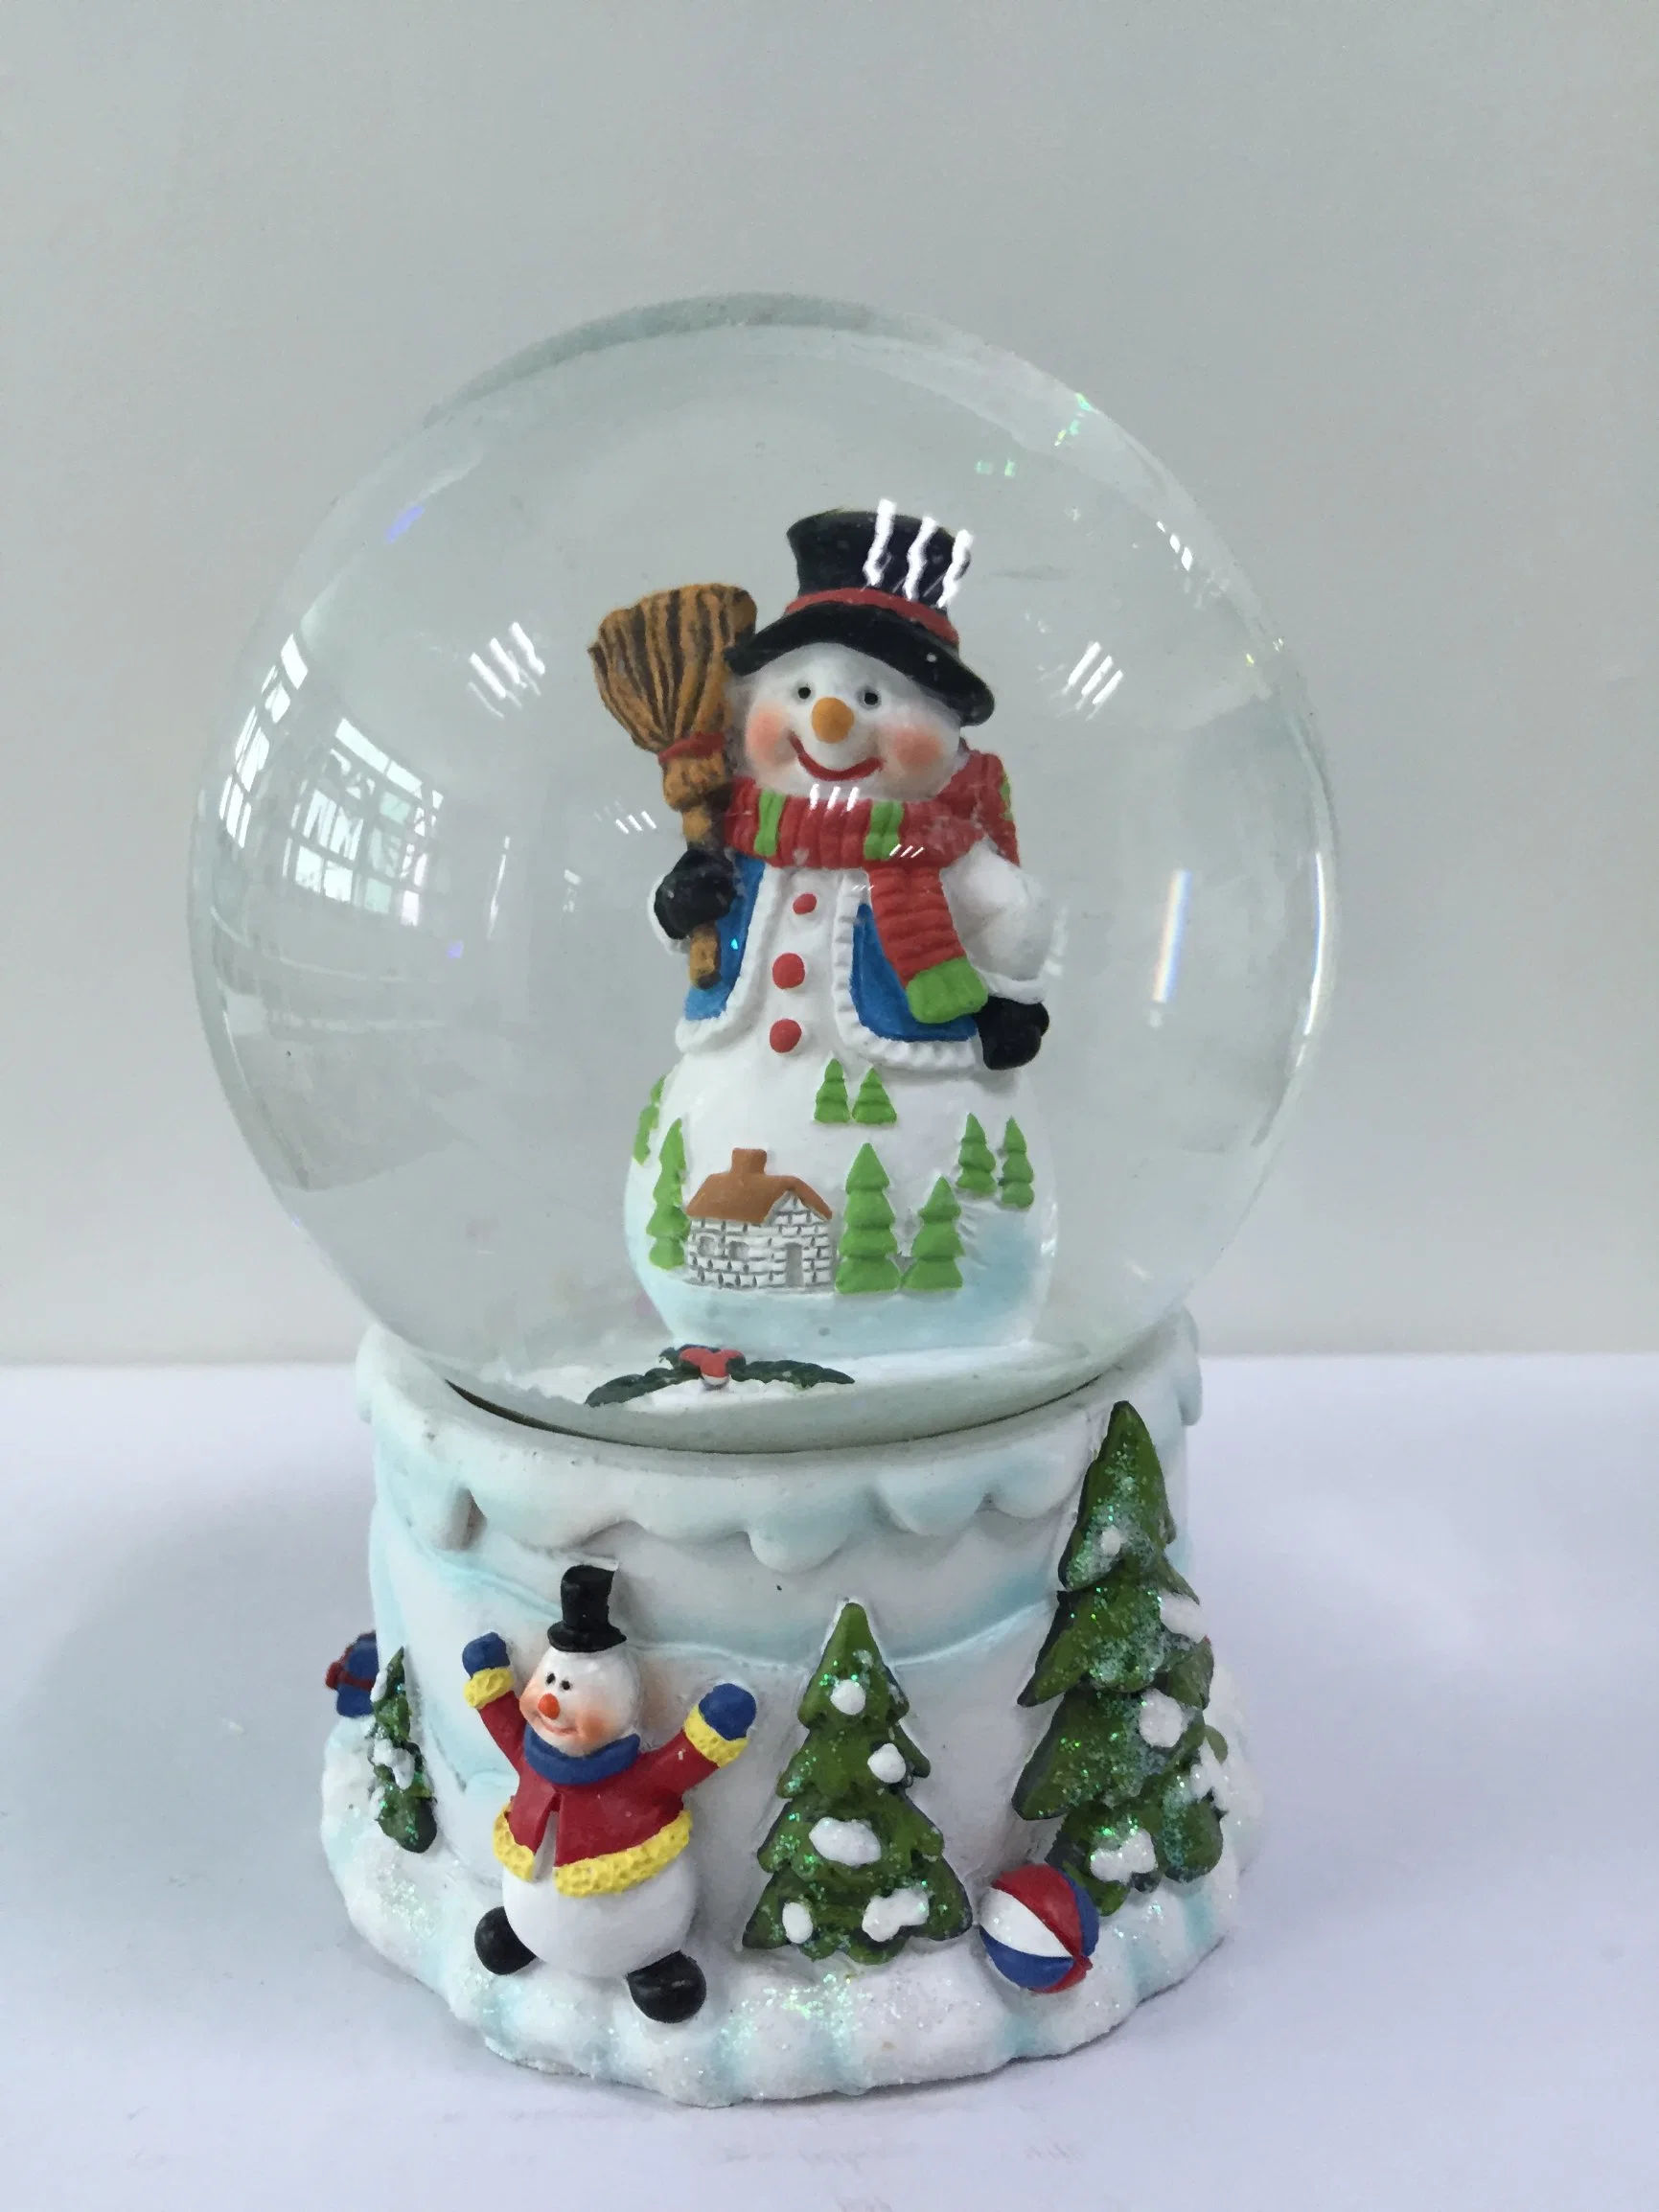 Produits de résine pour la décoration d'intérieur, boule de neige de Noël, la maison de Noël maintenant Globe de neige boule de résine souvenir 3D